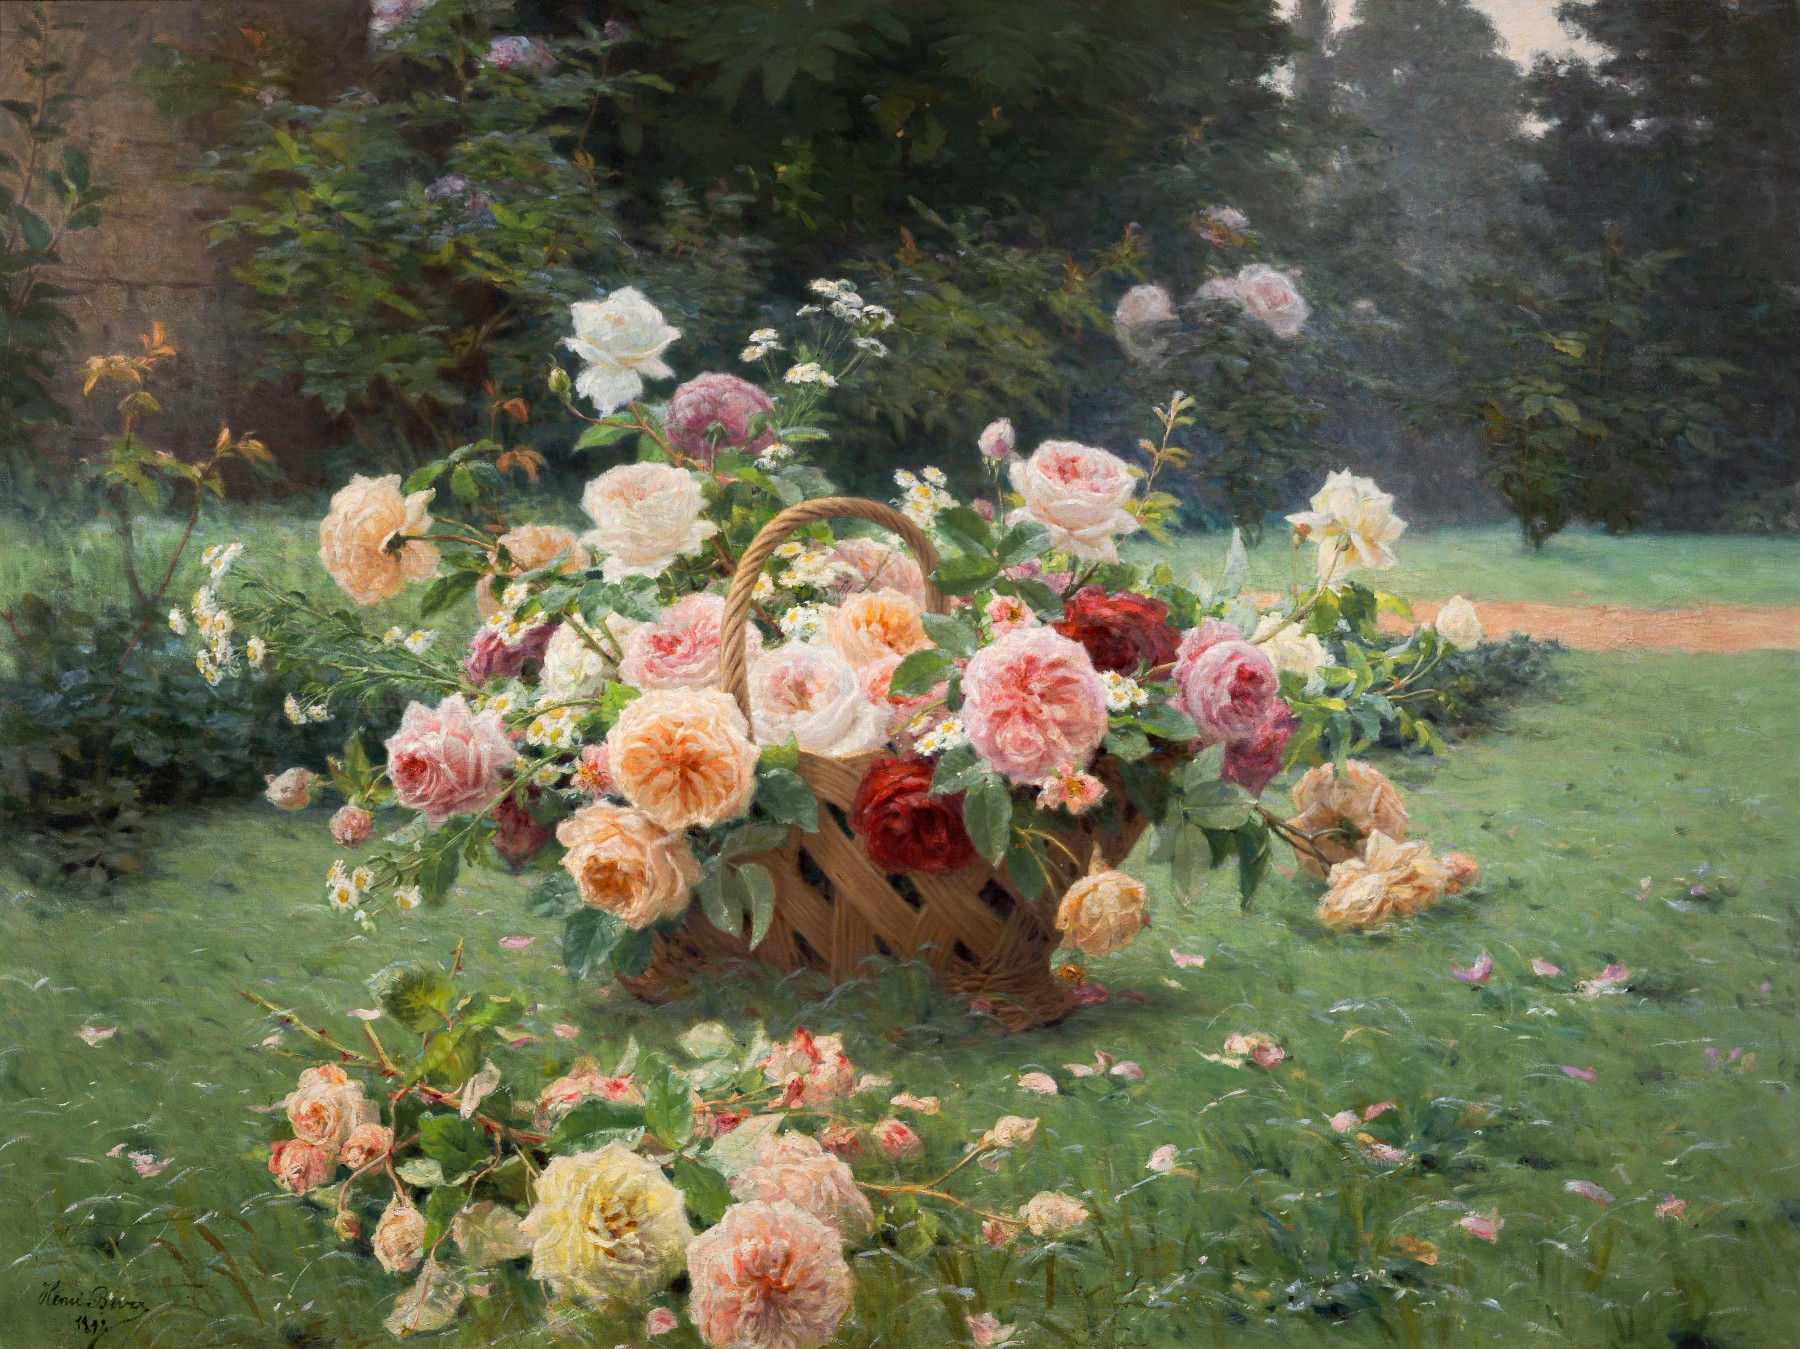 Korb mit Rosen by Henri Biva - 1891 - 160 x 120 cm Private Sammlung